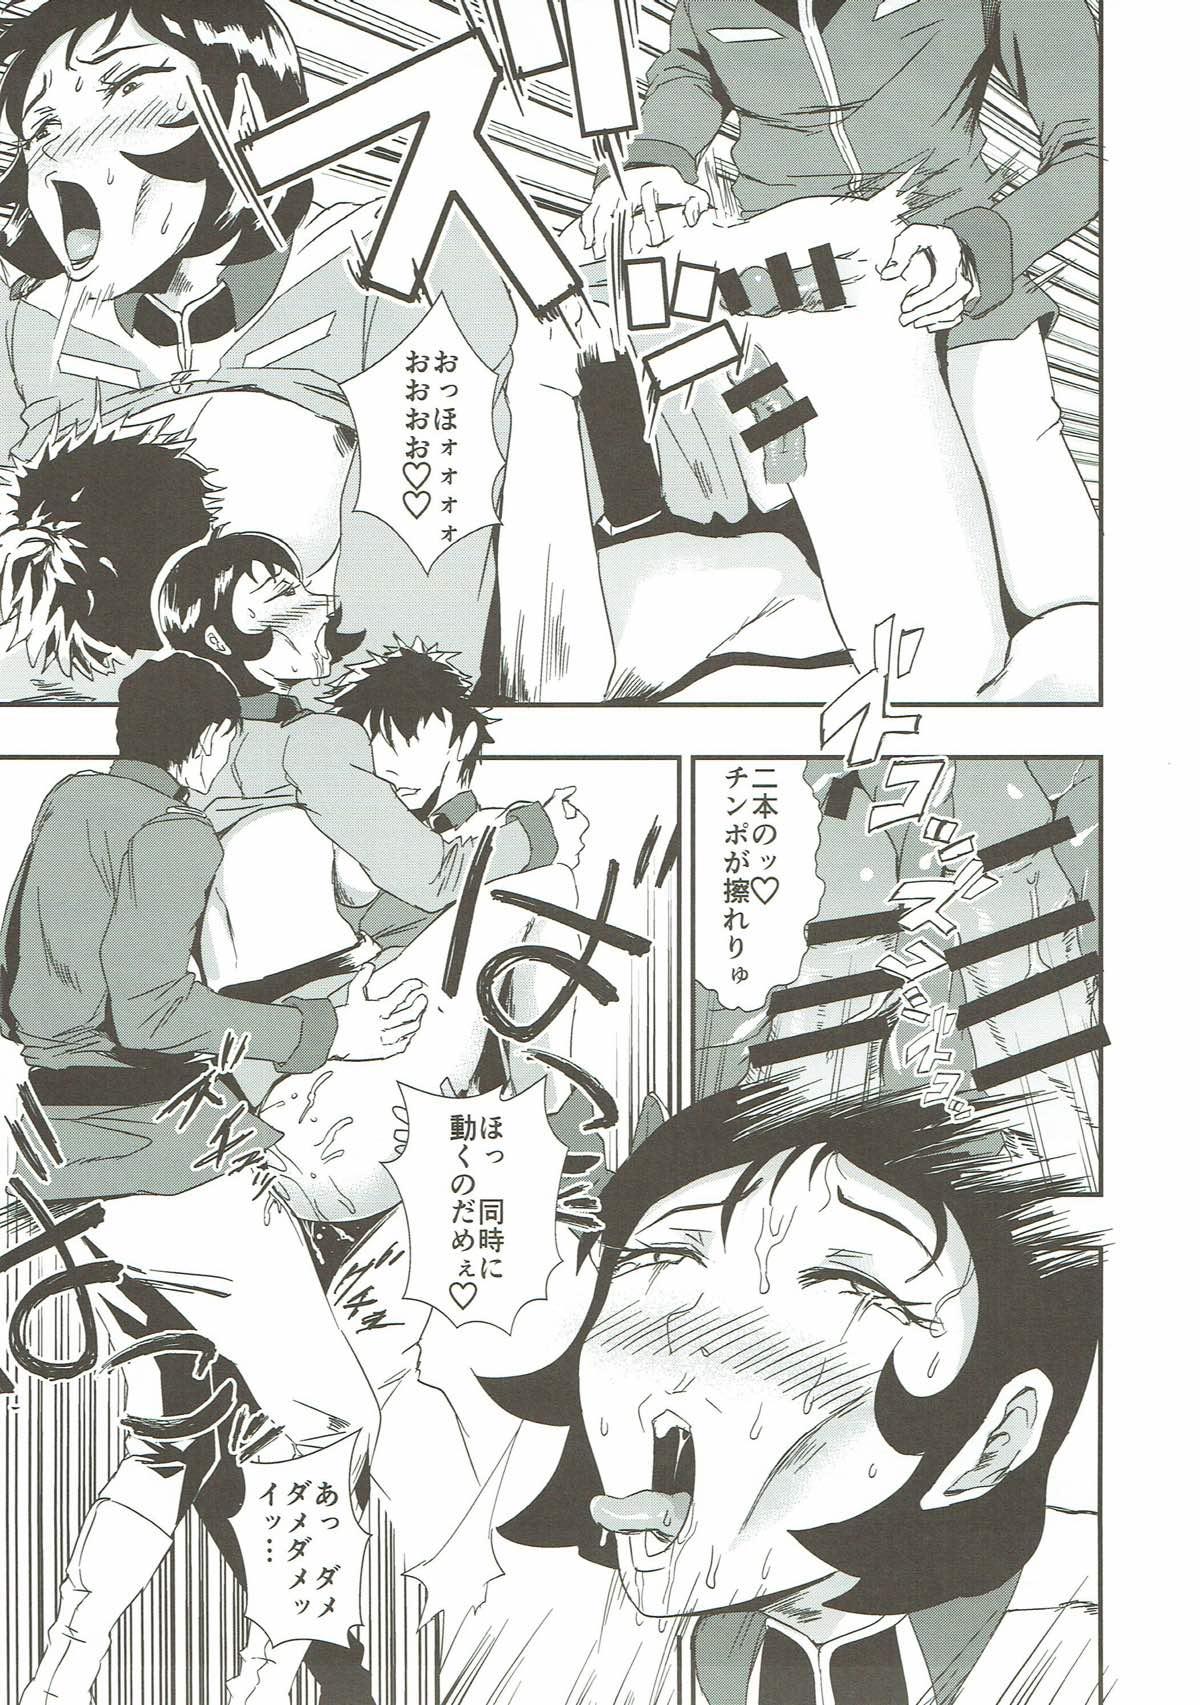 Bro Hakudaku Senkan - Gundam Mobile suit gundam Chubby - Page 6